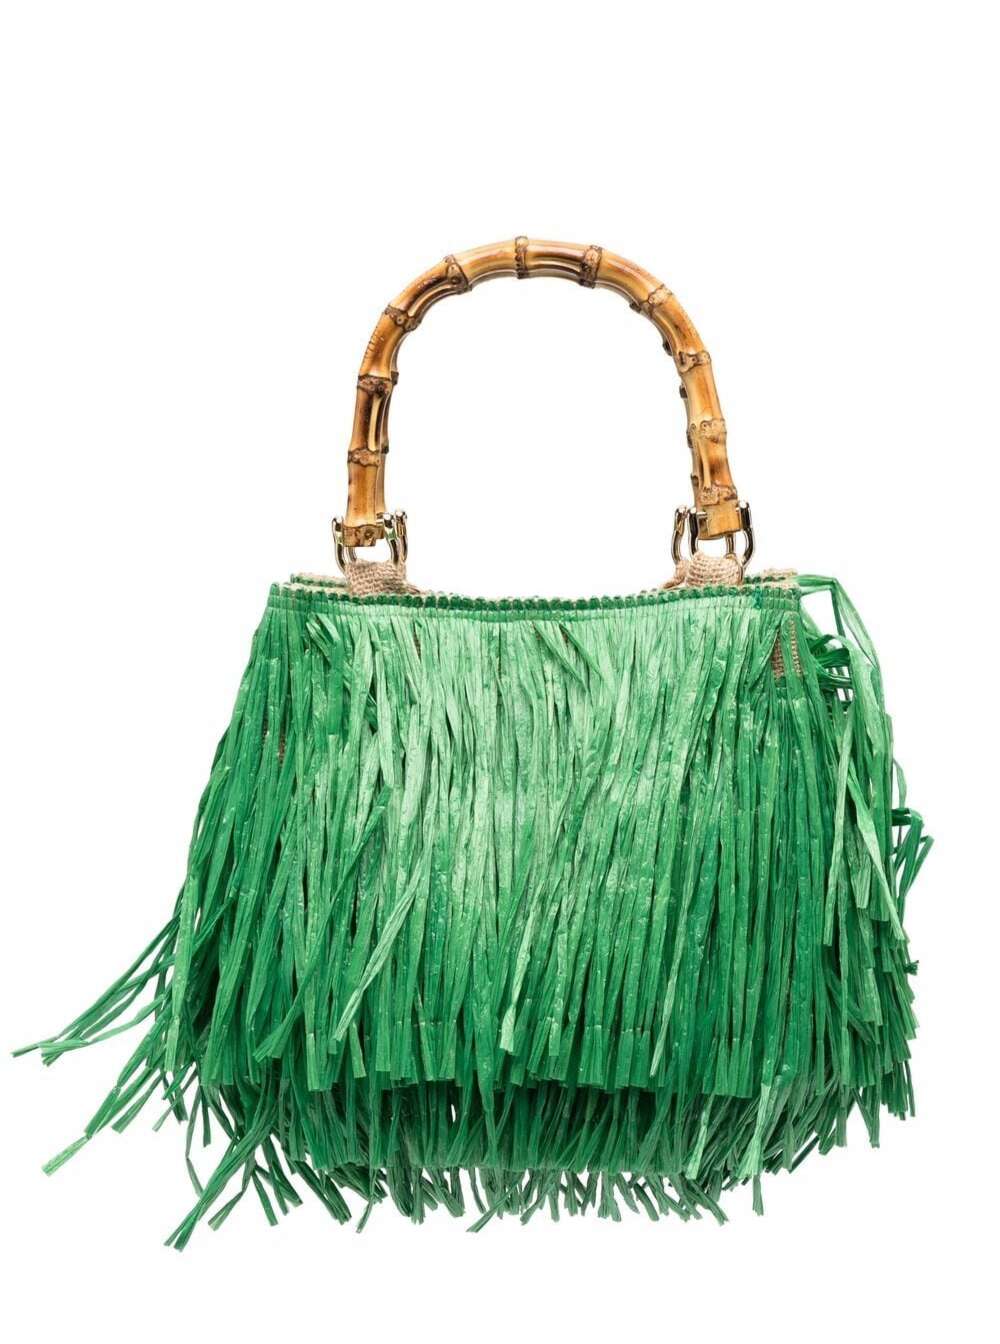 LaMilanesa La Milanesa Womans Green Jute Handbag With Fringes